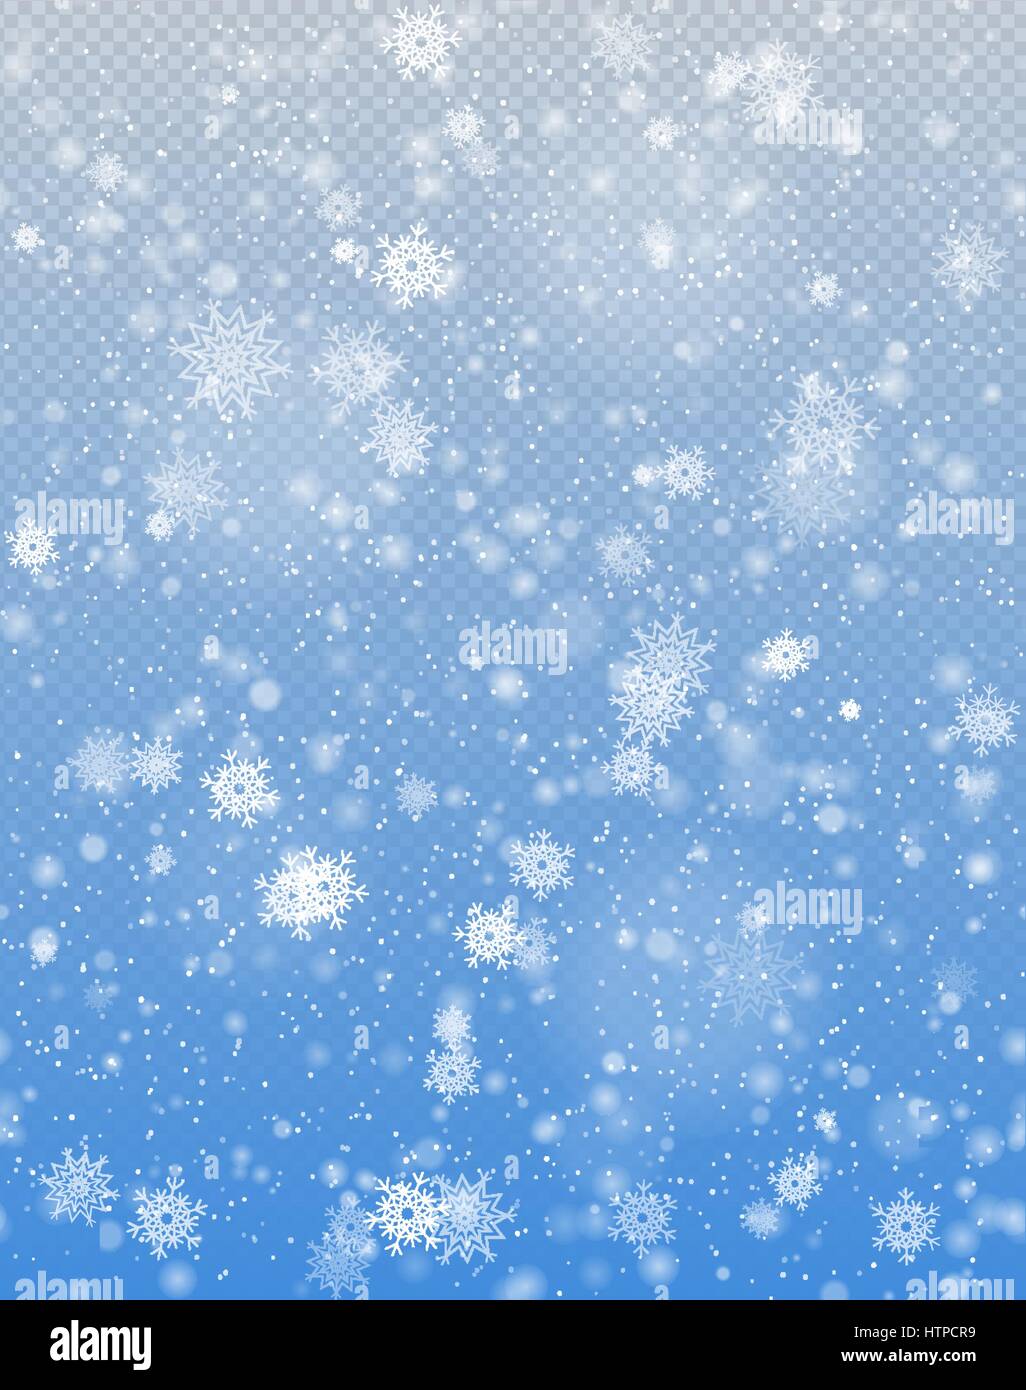 Nahtlose Vektor weißen Schneefall-Effekt auf blau transparenten Hintergrund. Fallender Schnee Winter Textur. Zarte weiße Schneeflocken Weihnachten Hintergrund Stock Vektor